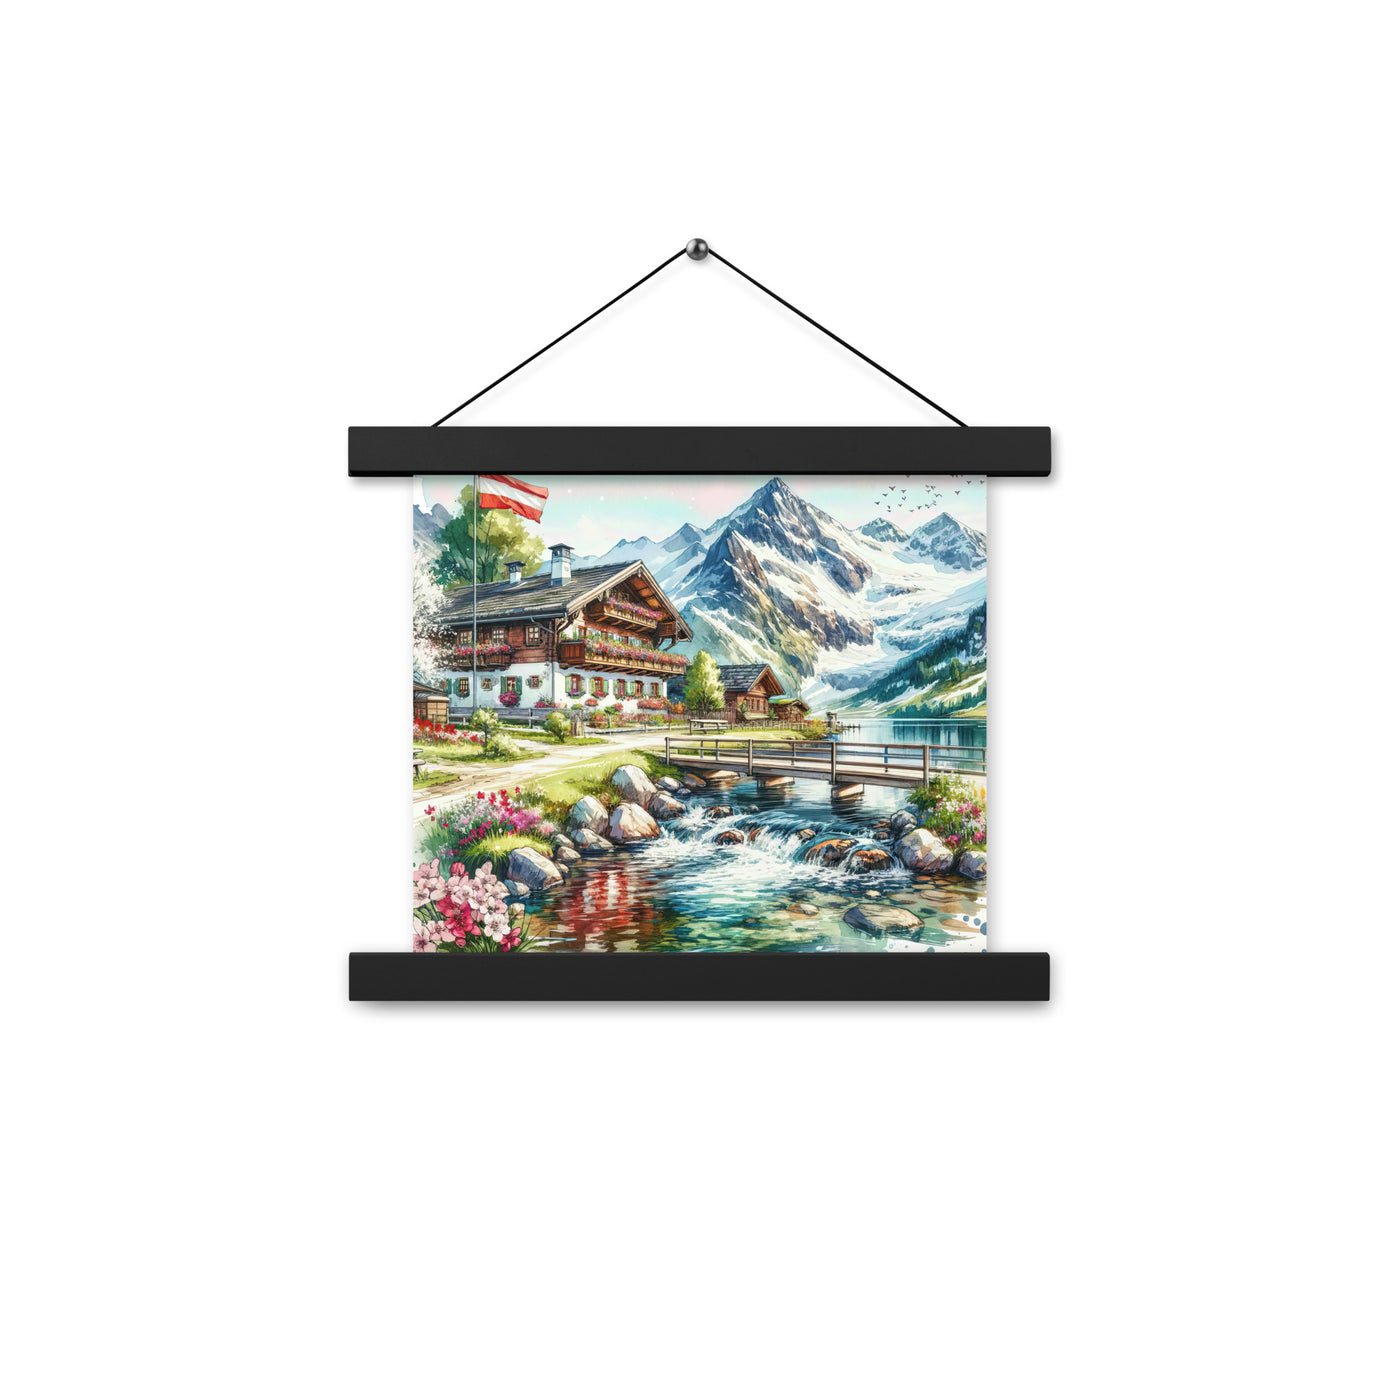 Aquarell der frühlingshaften Alpenkette mit österreichischer Flagge und schmelzendem Schnee - Enhanced Matte Paper Poster With Hanger berge xxx yyy zzz 25.4 x 25.4 cm